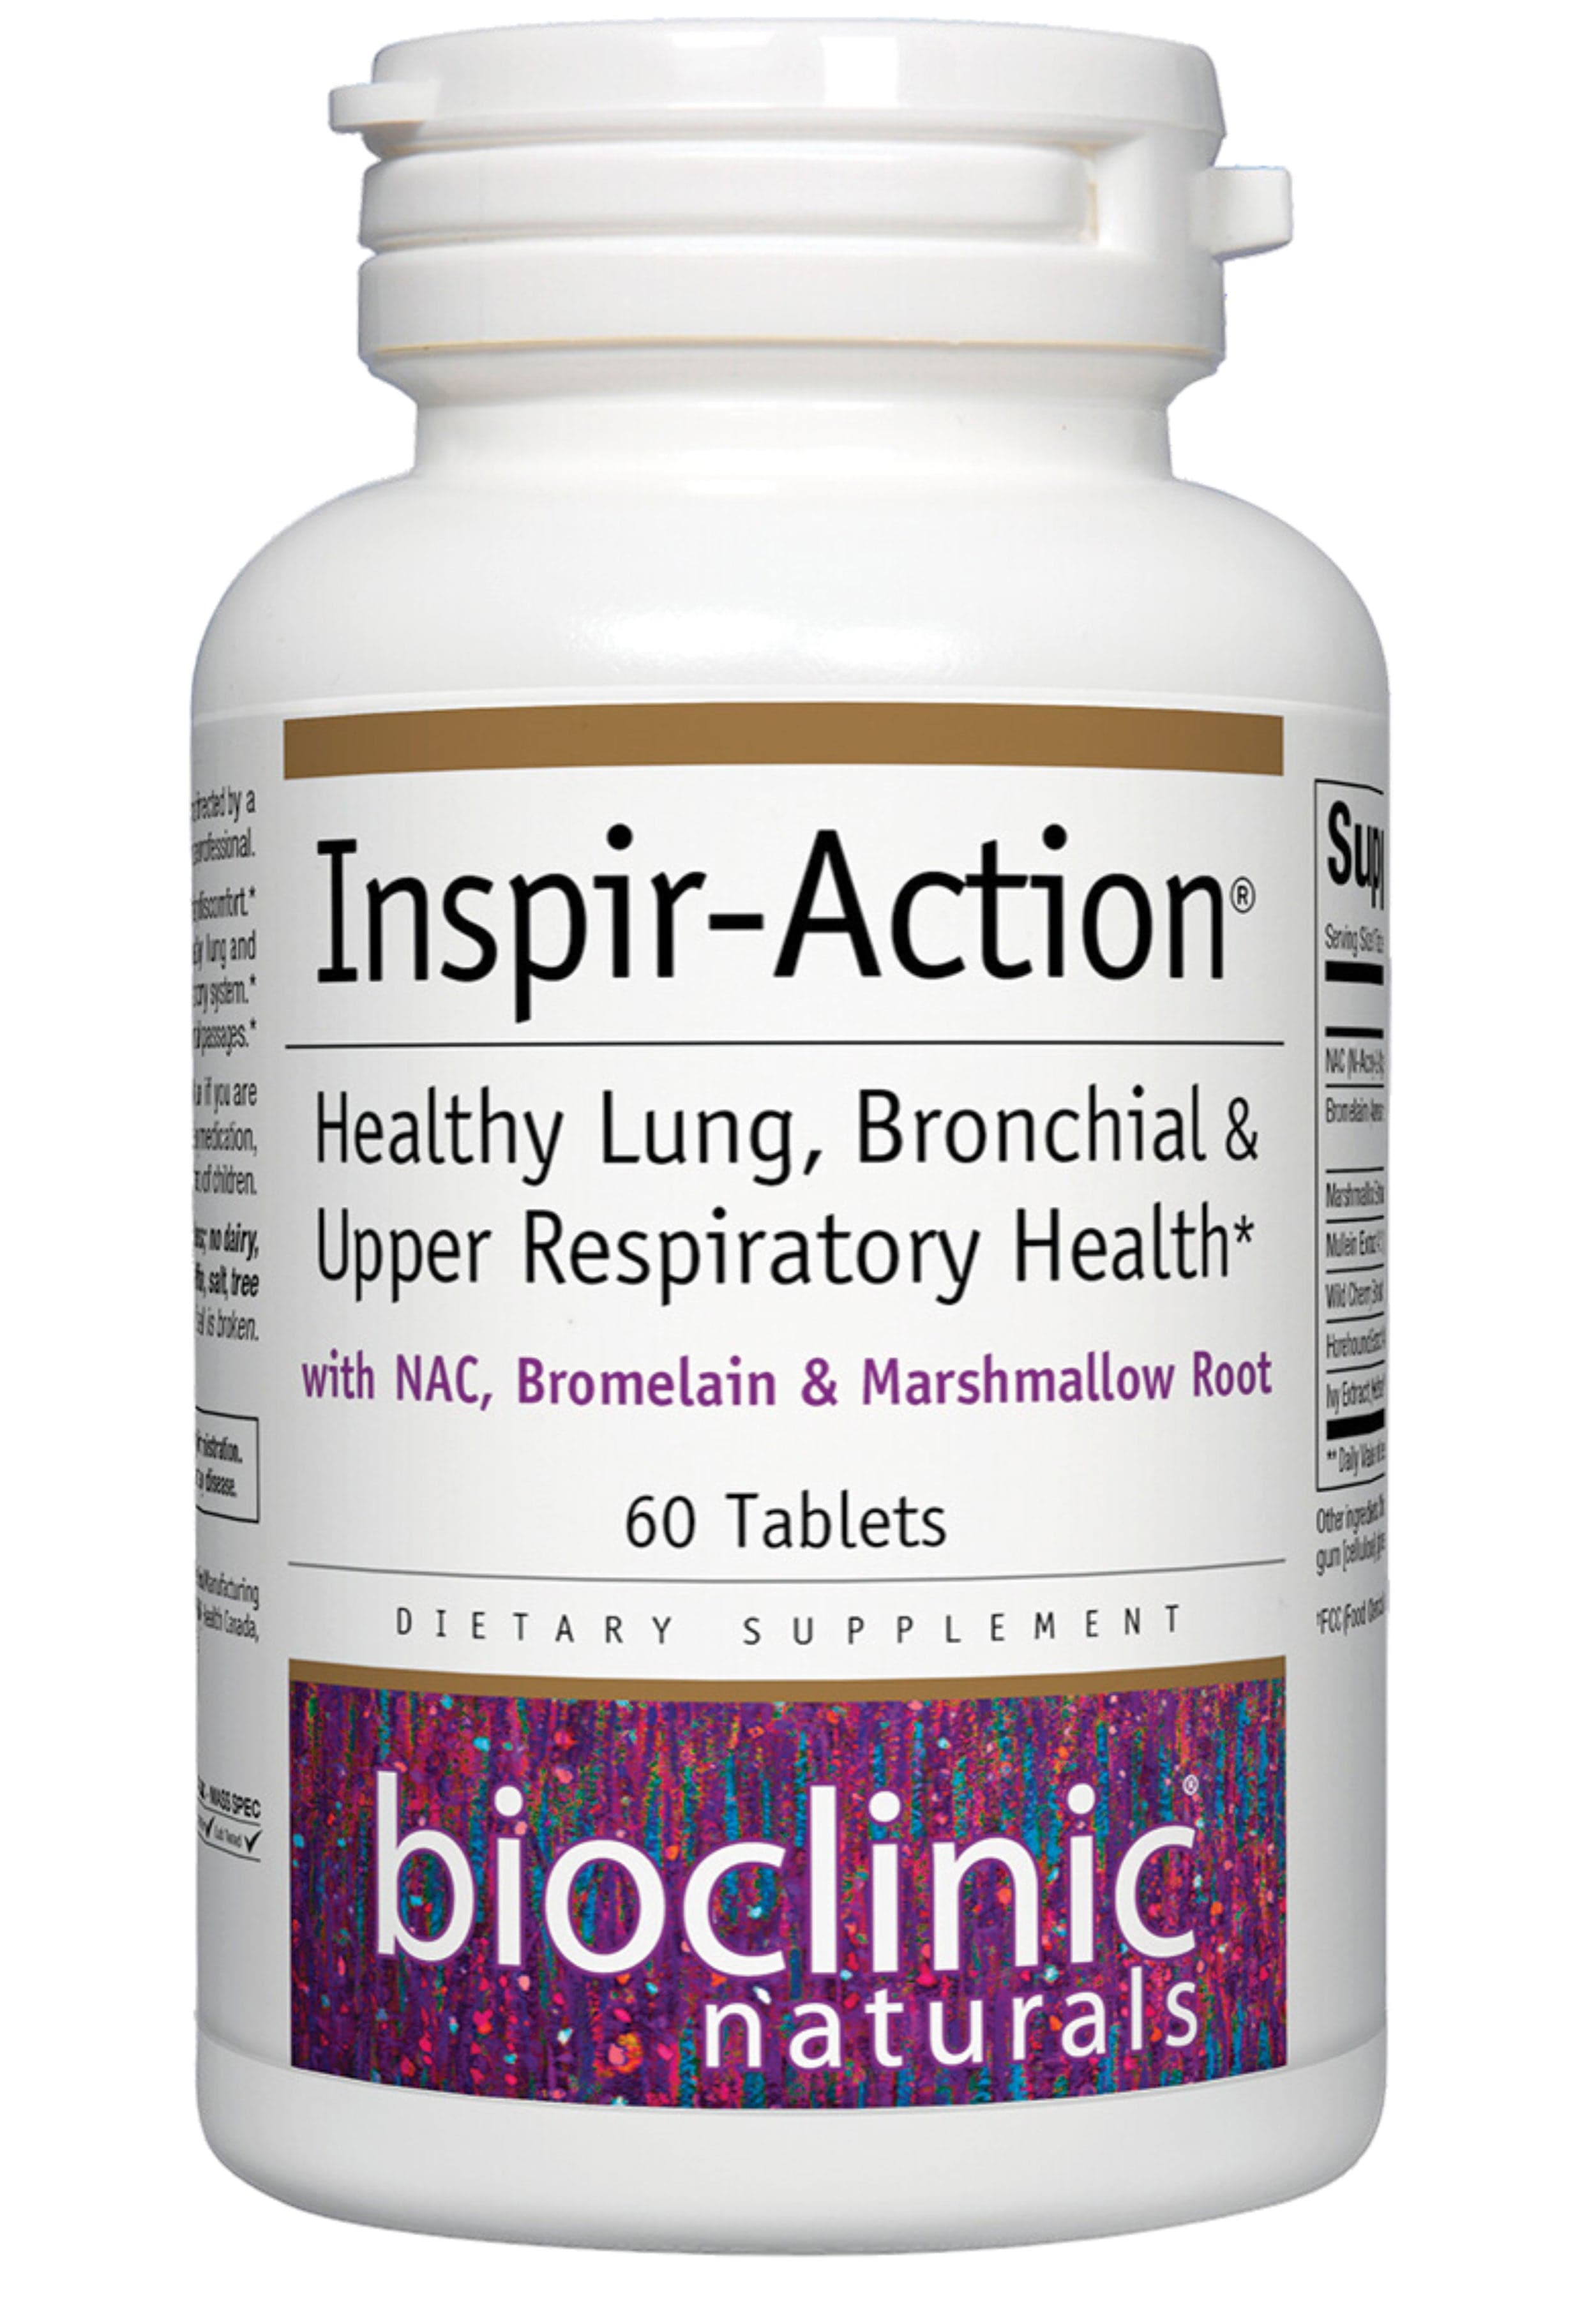 Bioclinic Naturals Inspir-Action